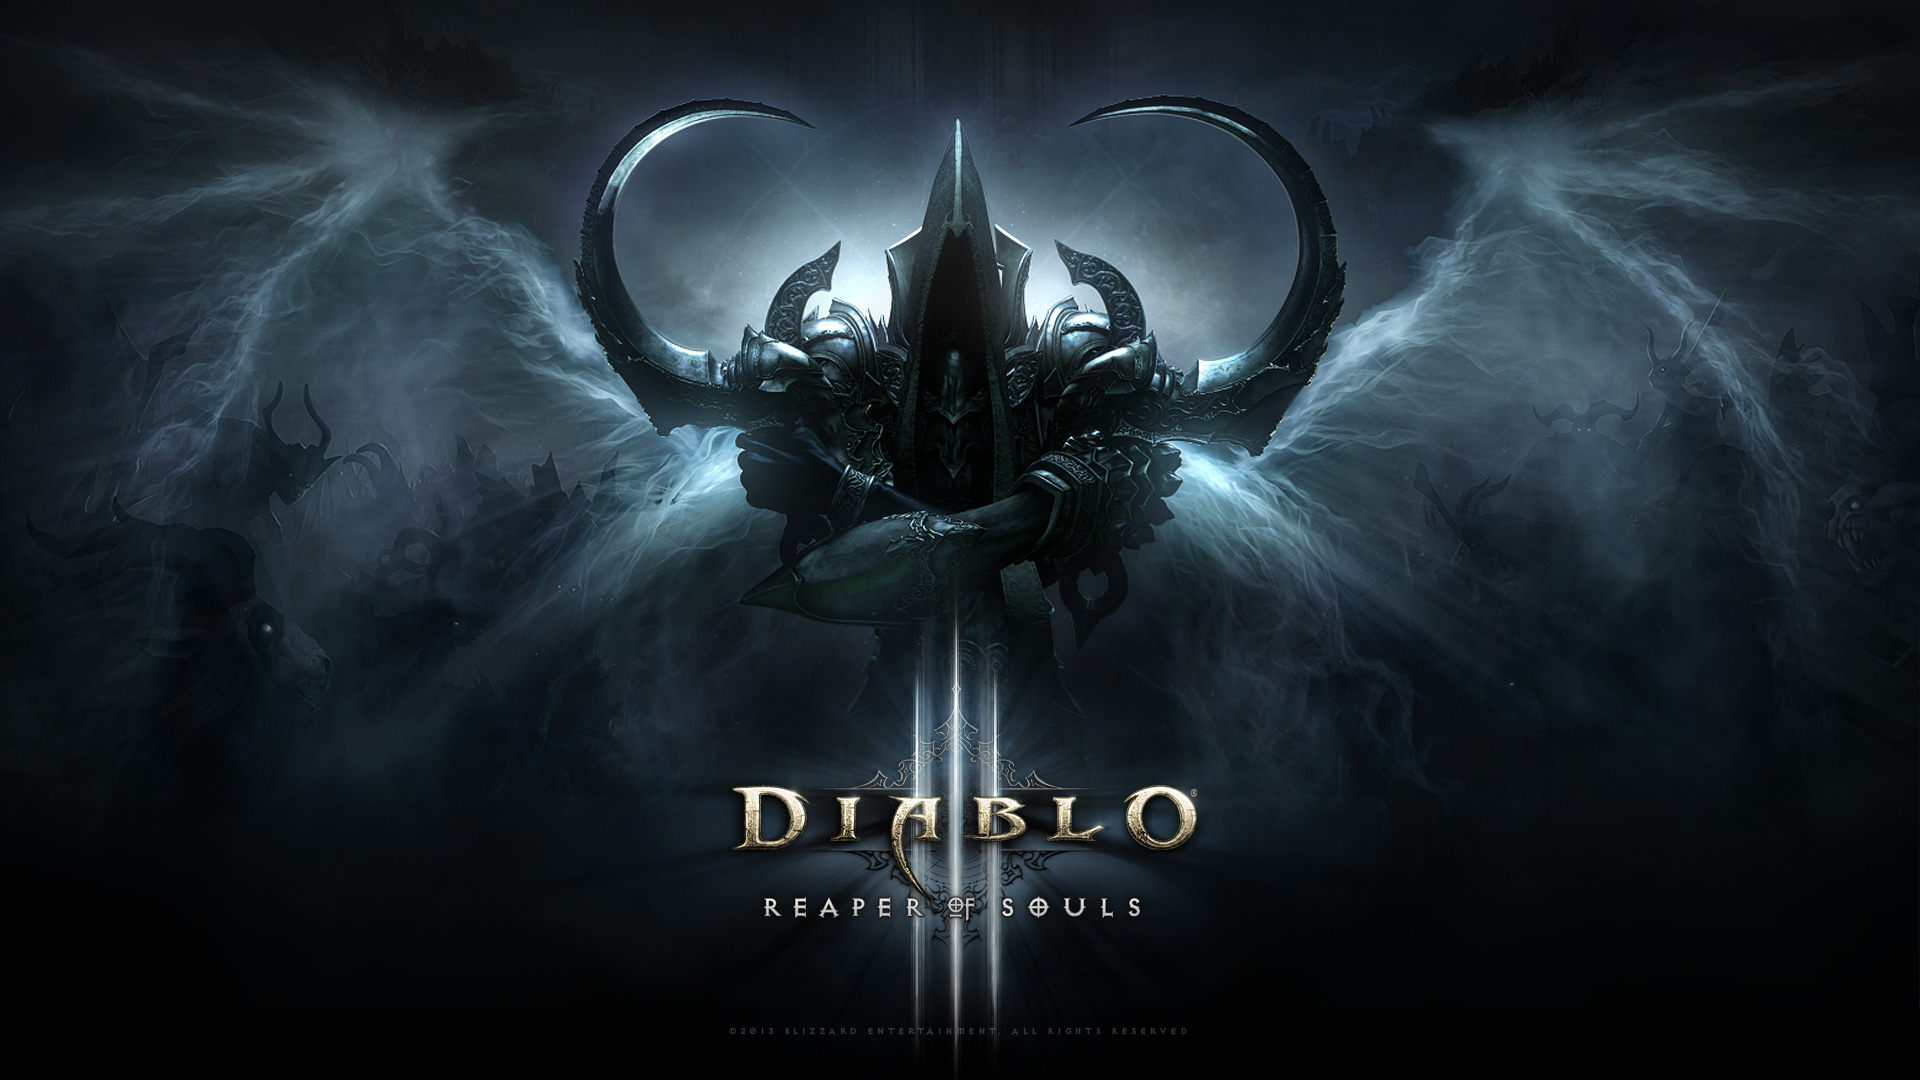 Diablo 3 Reaper of Souls Wallpaper 1920X1080